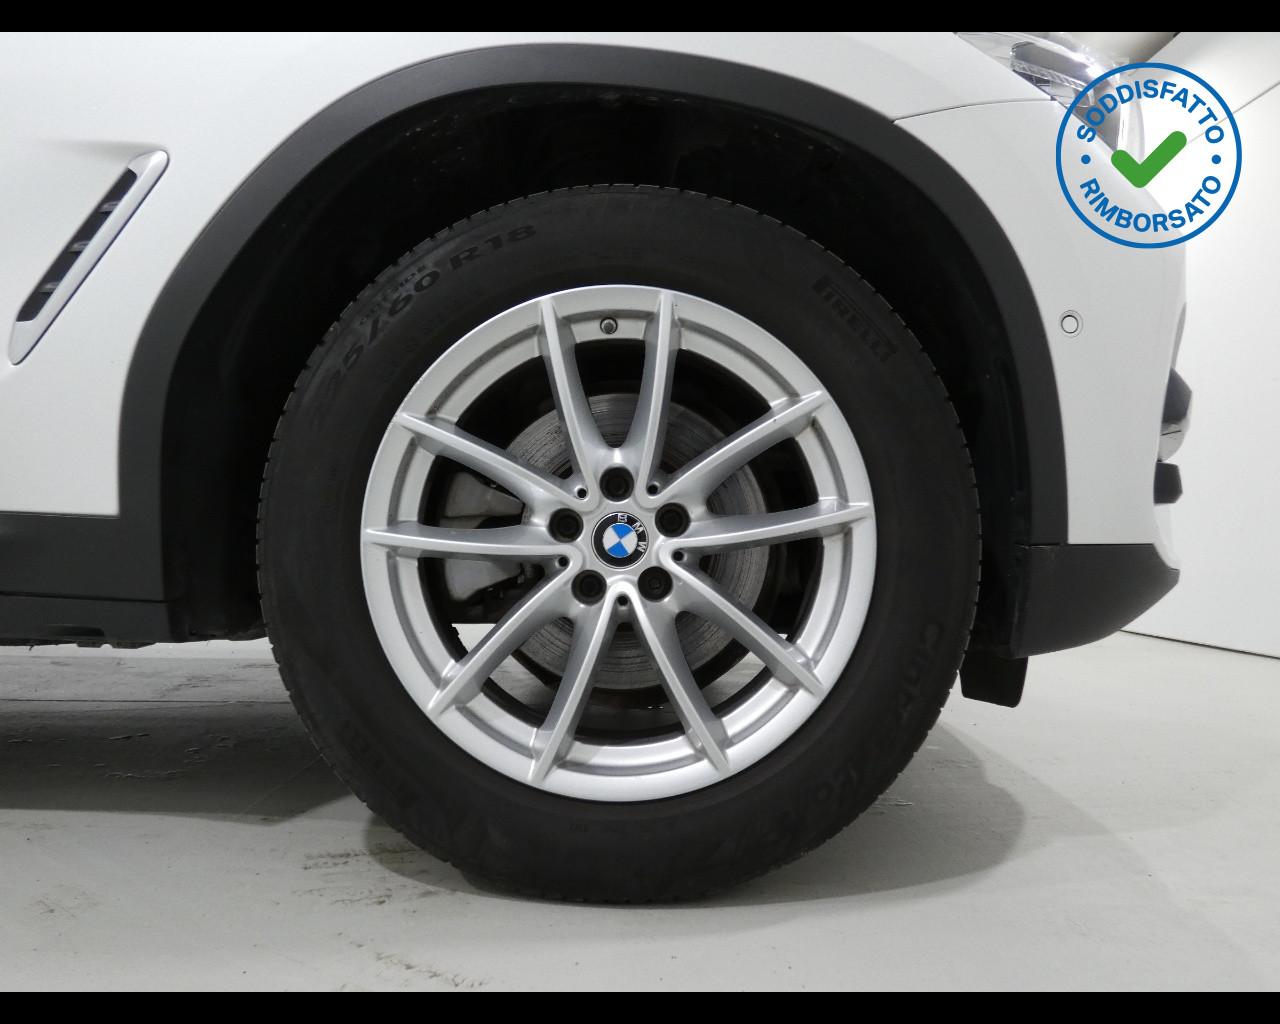 BMW X3 (G01/F97) X3 xDrive20d 48V Business Advantage